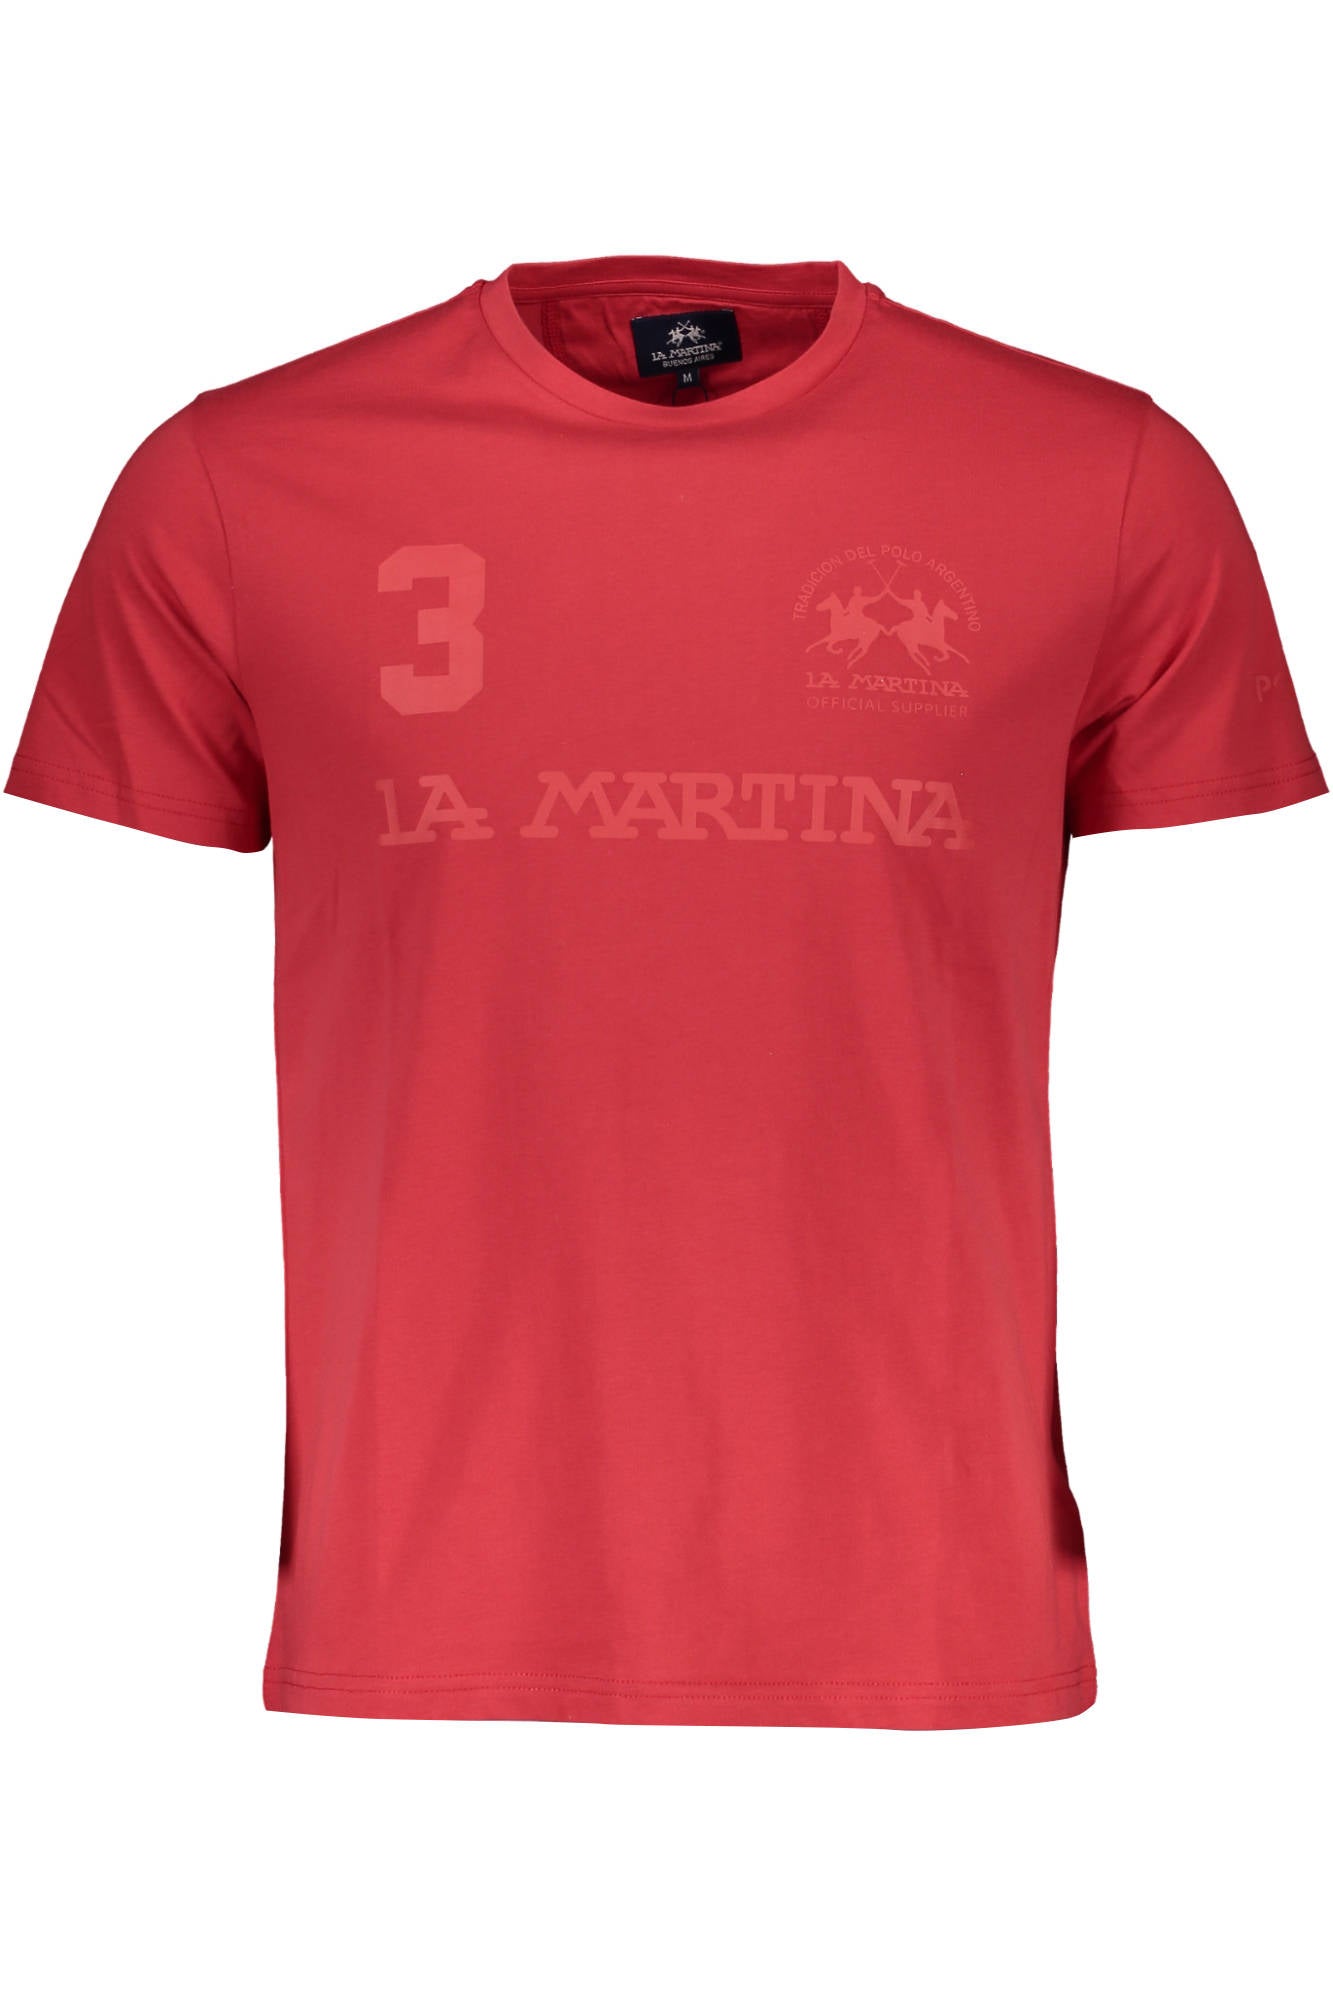 La Martina Red T-Shirt - Fizigo